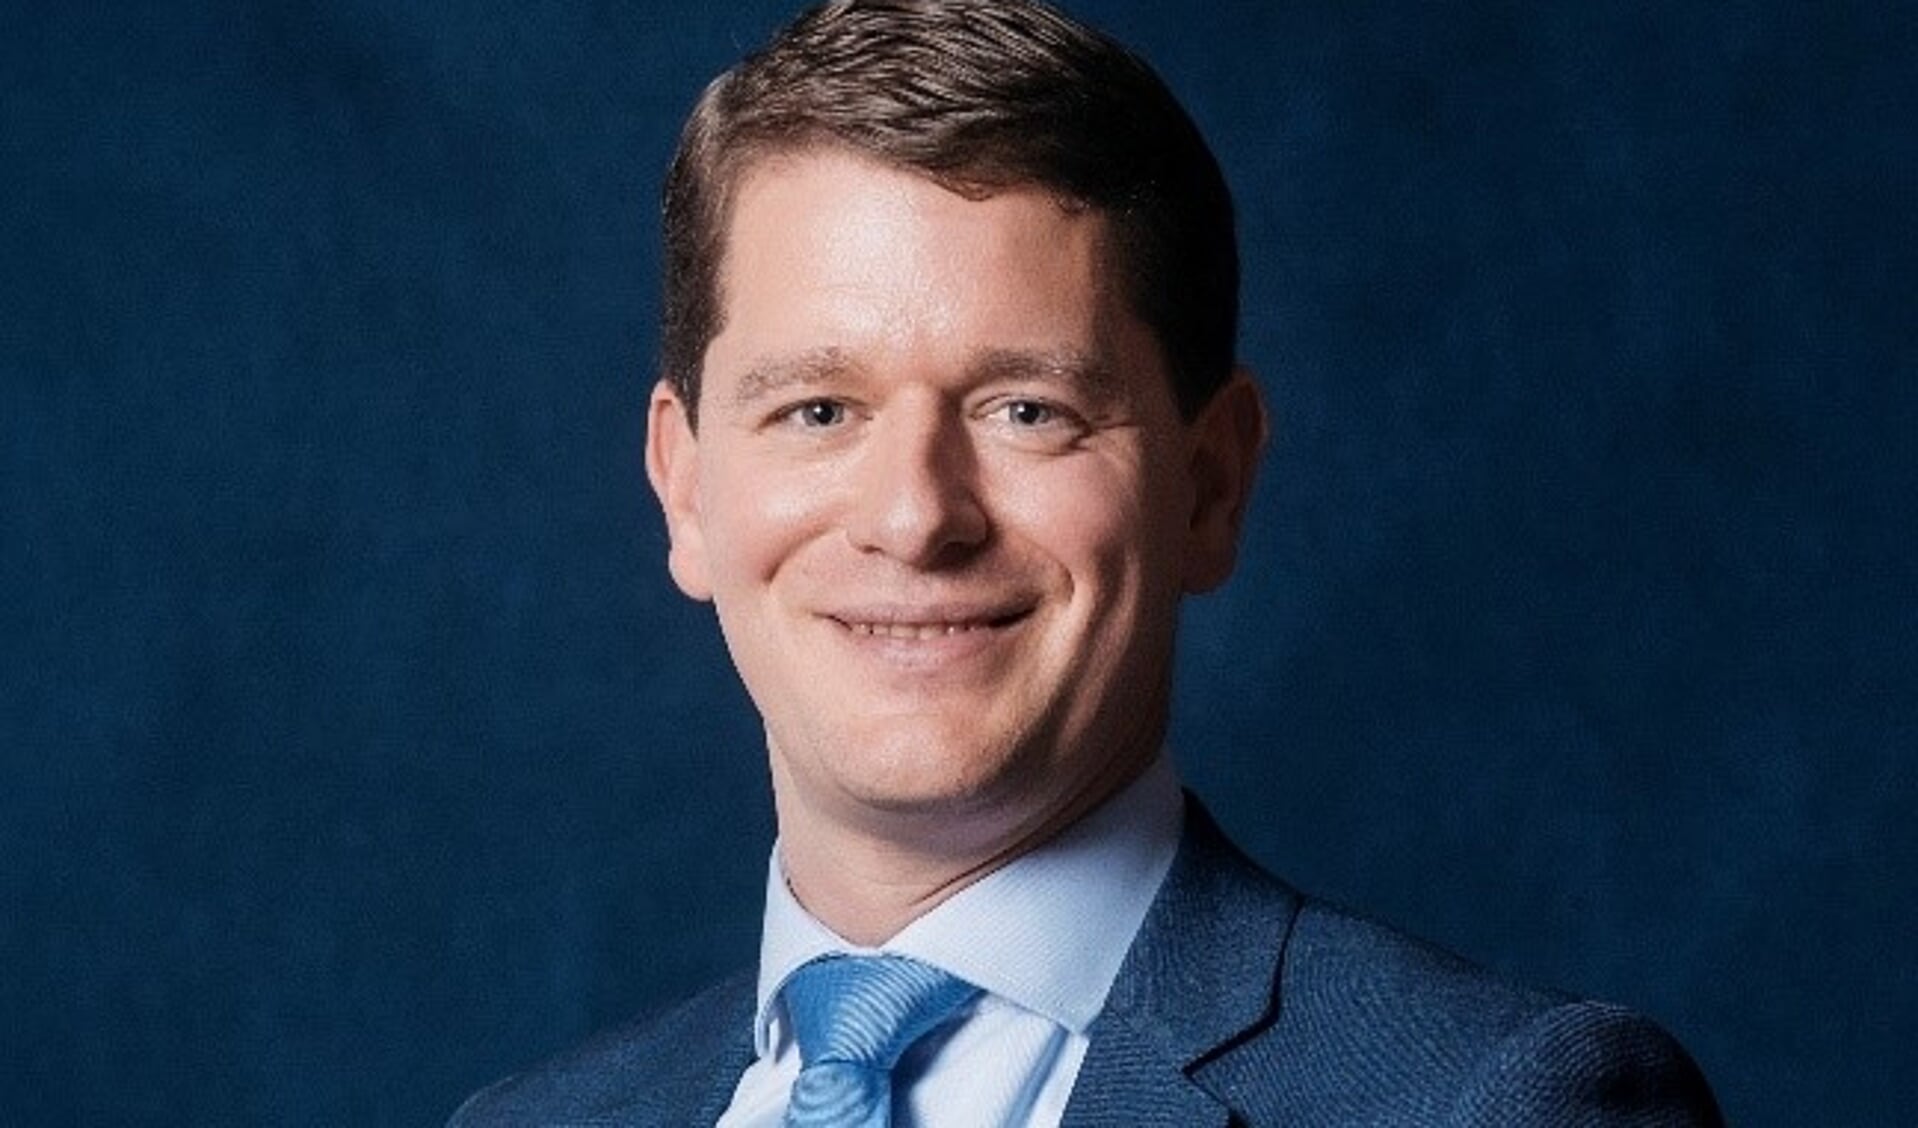 Bastiaan Postma van de VVD gaat aan de slag als informateur om de 'nieuwe regering' van Huizen samen te stellen.